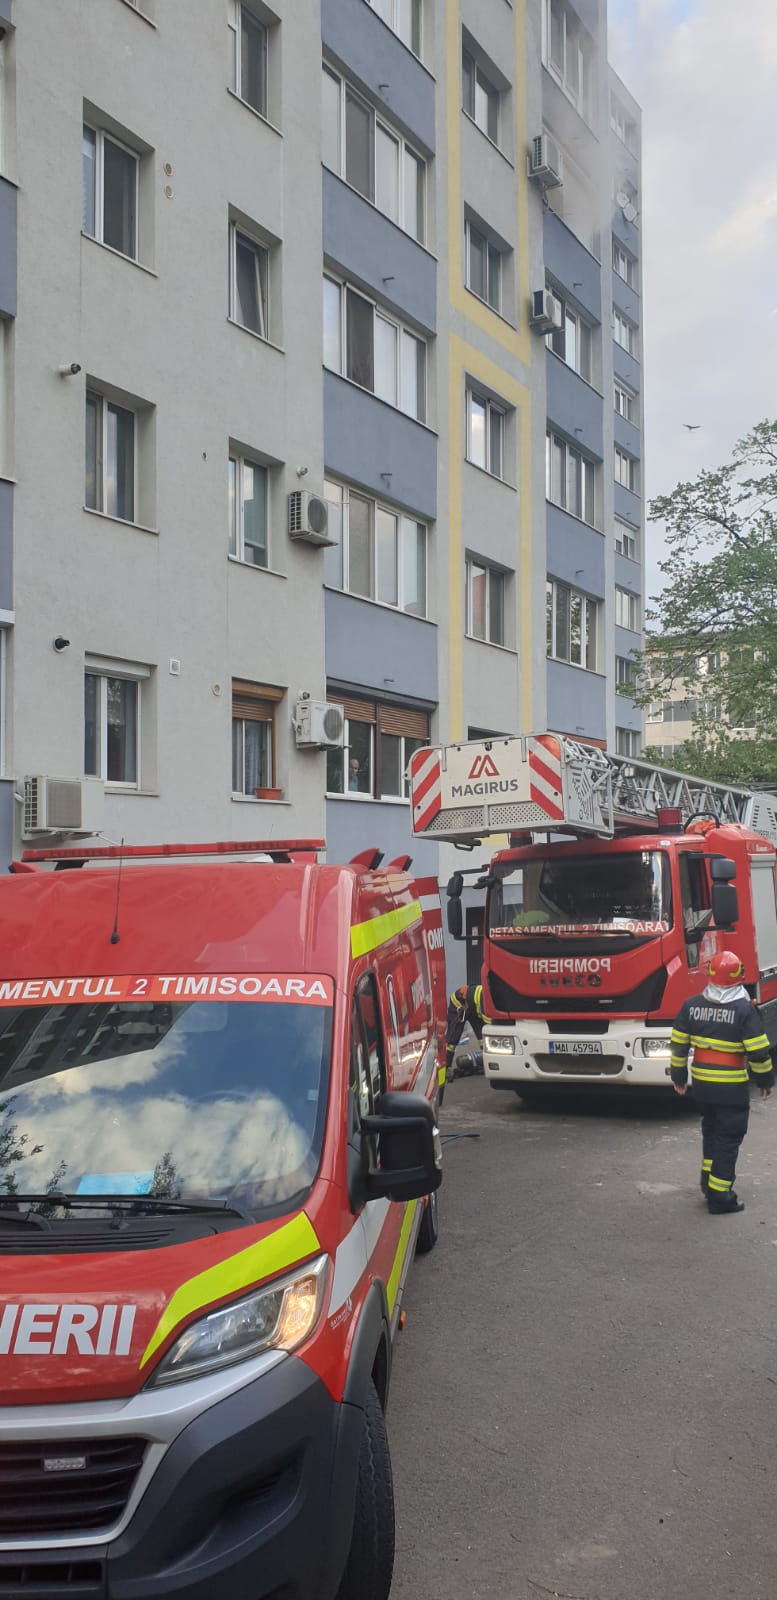 Incidendiu pornit de la o lumânare lăsată aprinsă, în ziua de Paște, la Timișoara